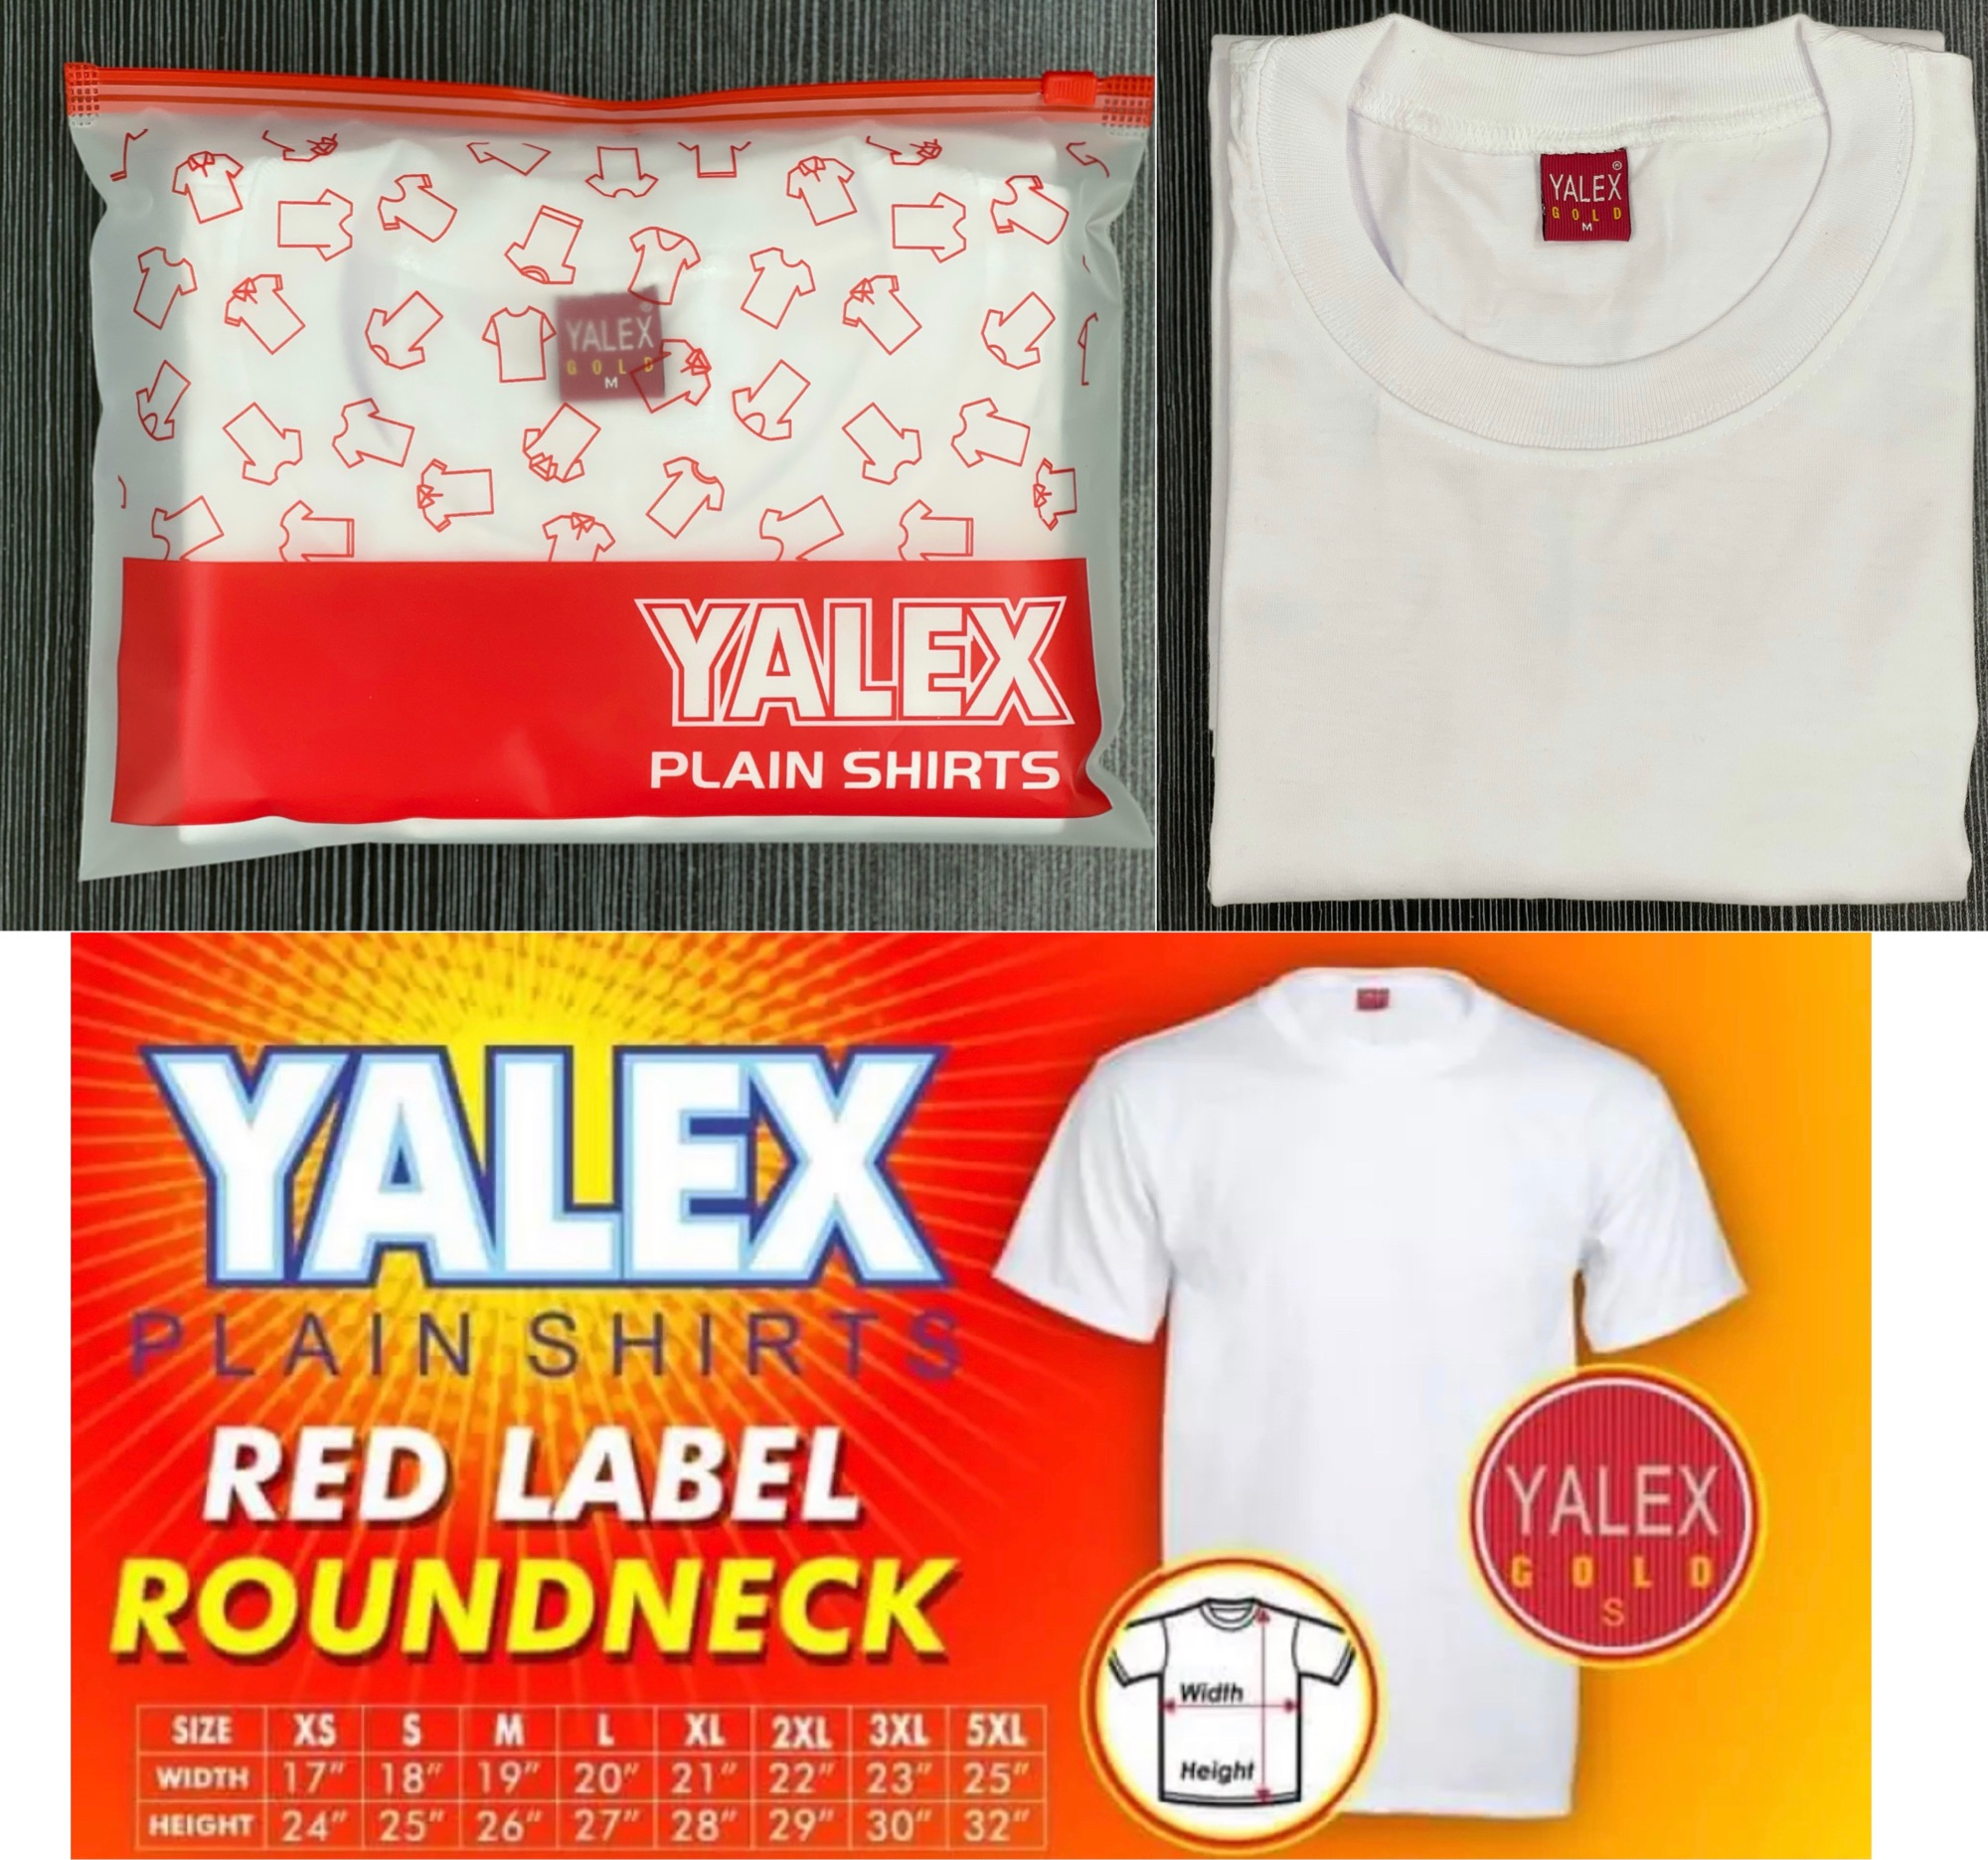 YALEX Unisex White Plain Shirt - XS to 5XL